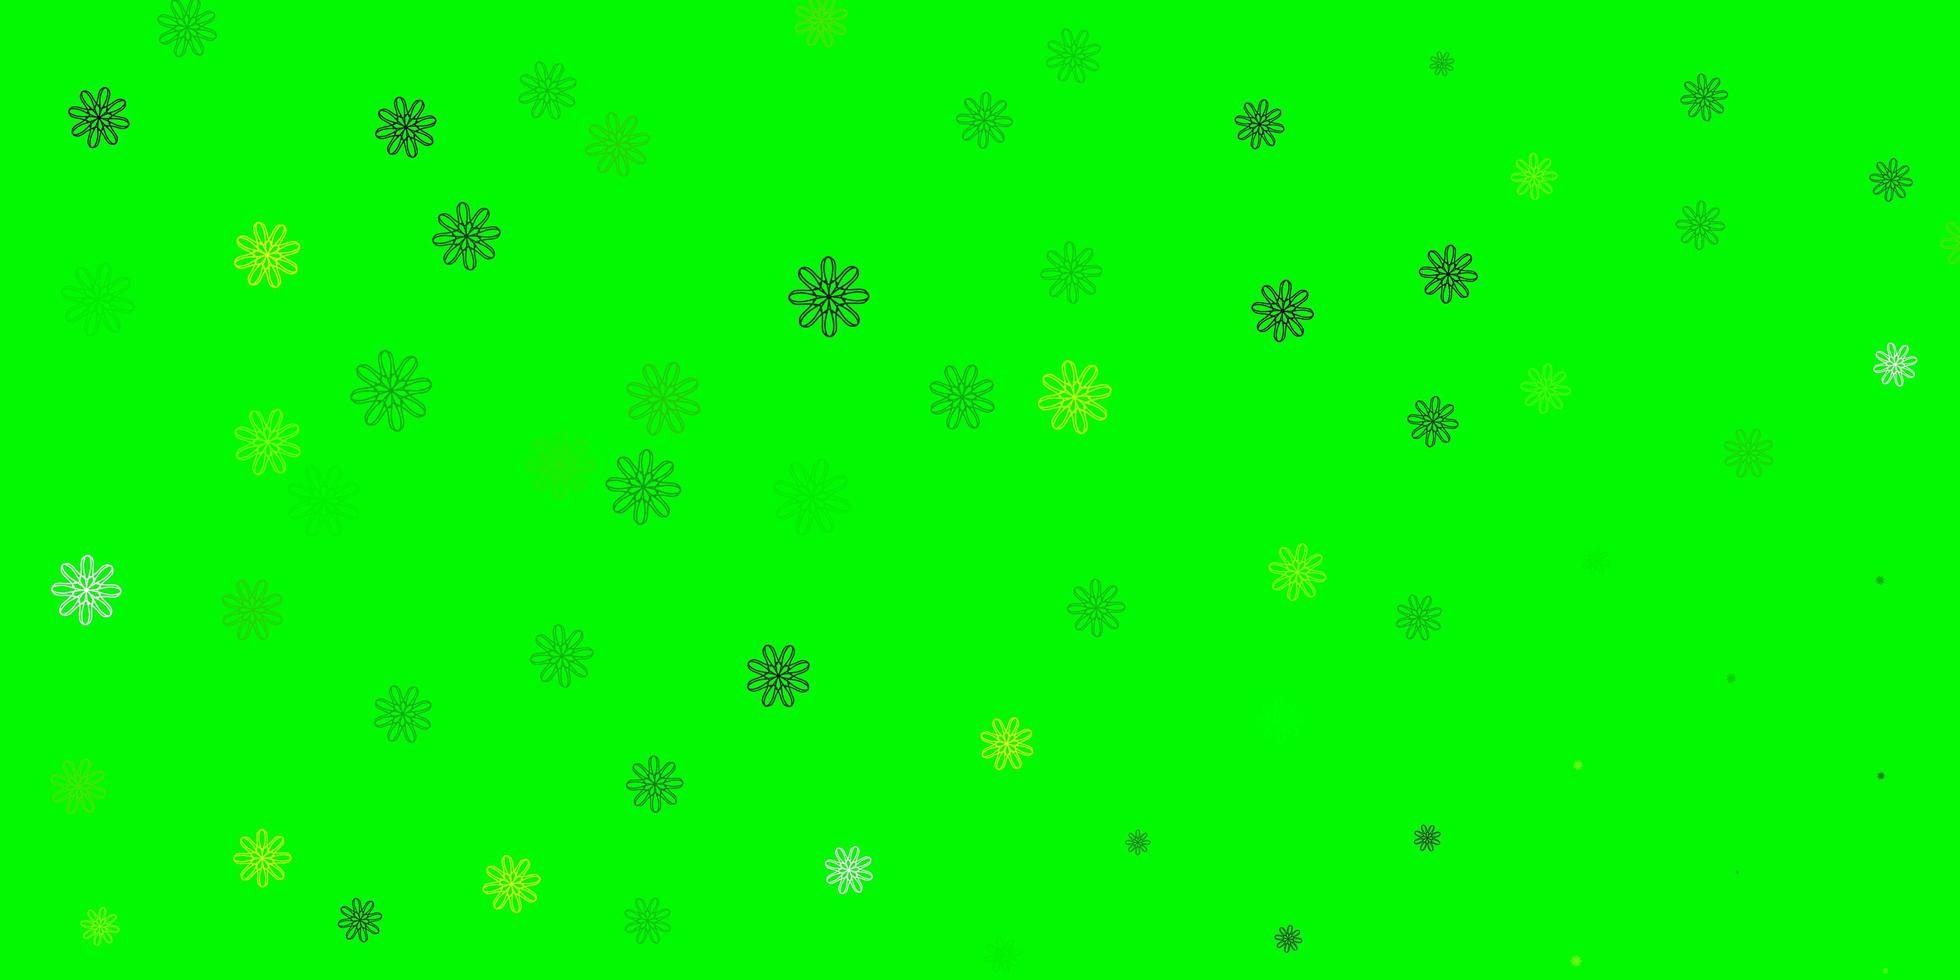 ljusgrön, gul vektor naturlig bakgrund med blommor.